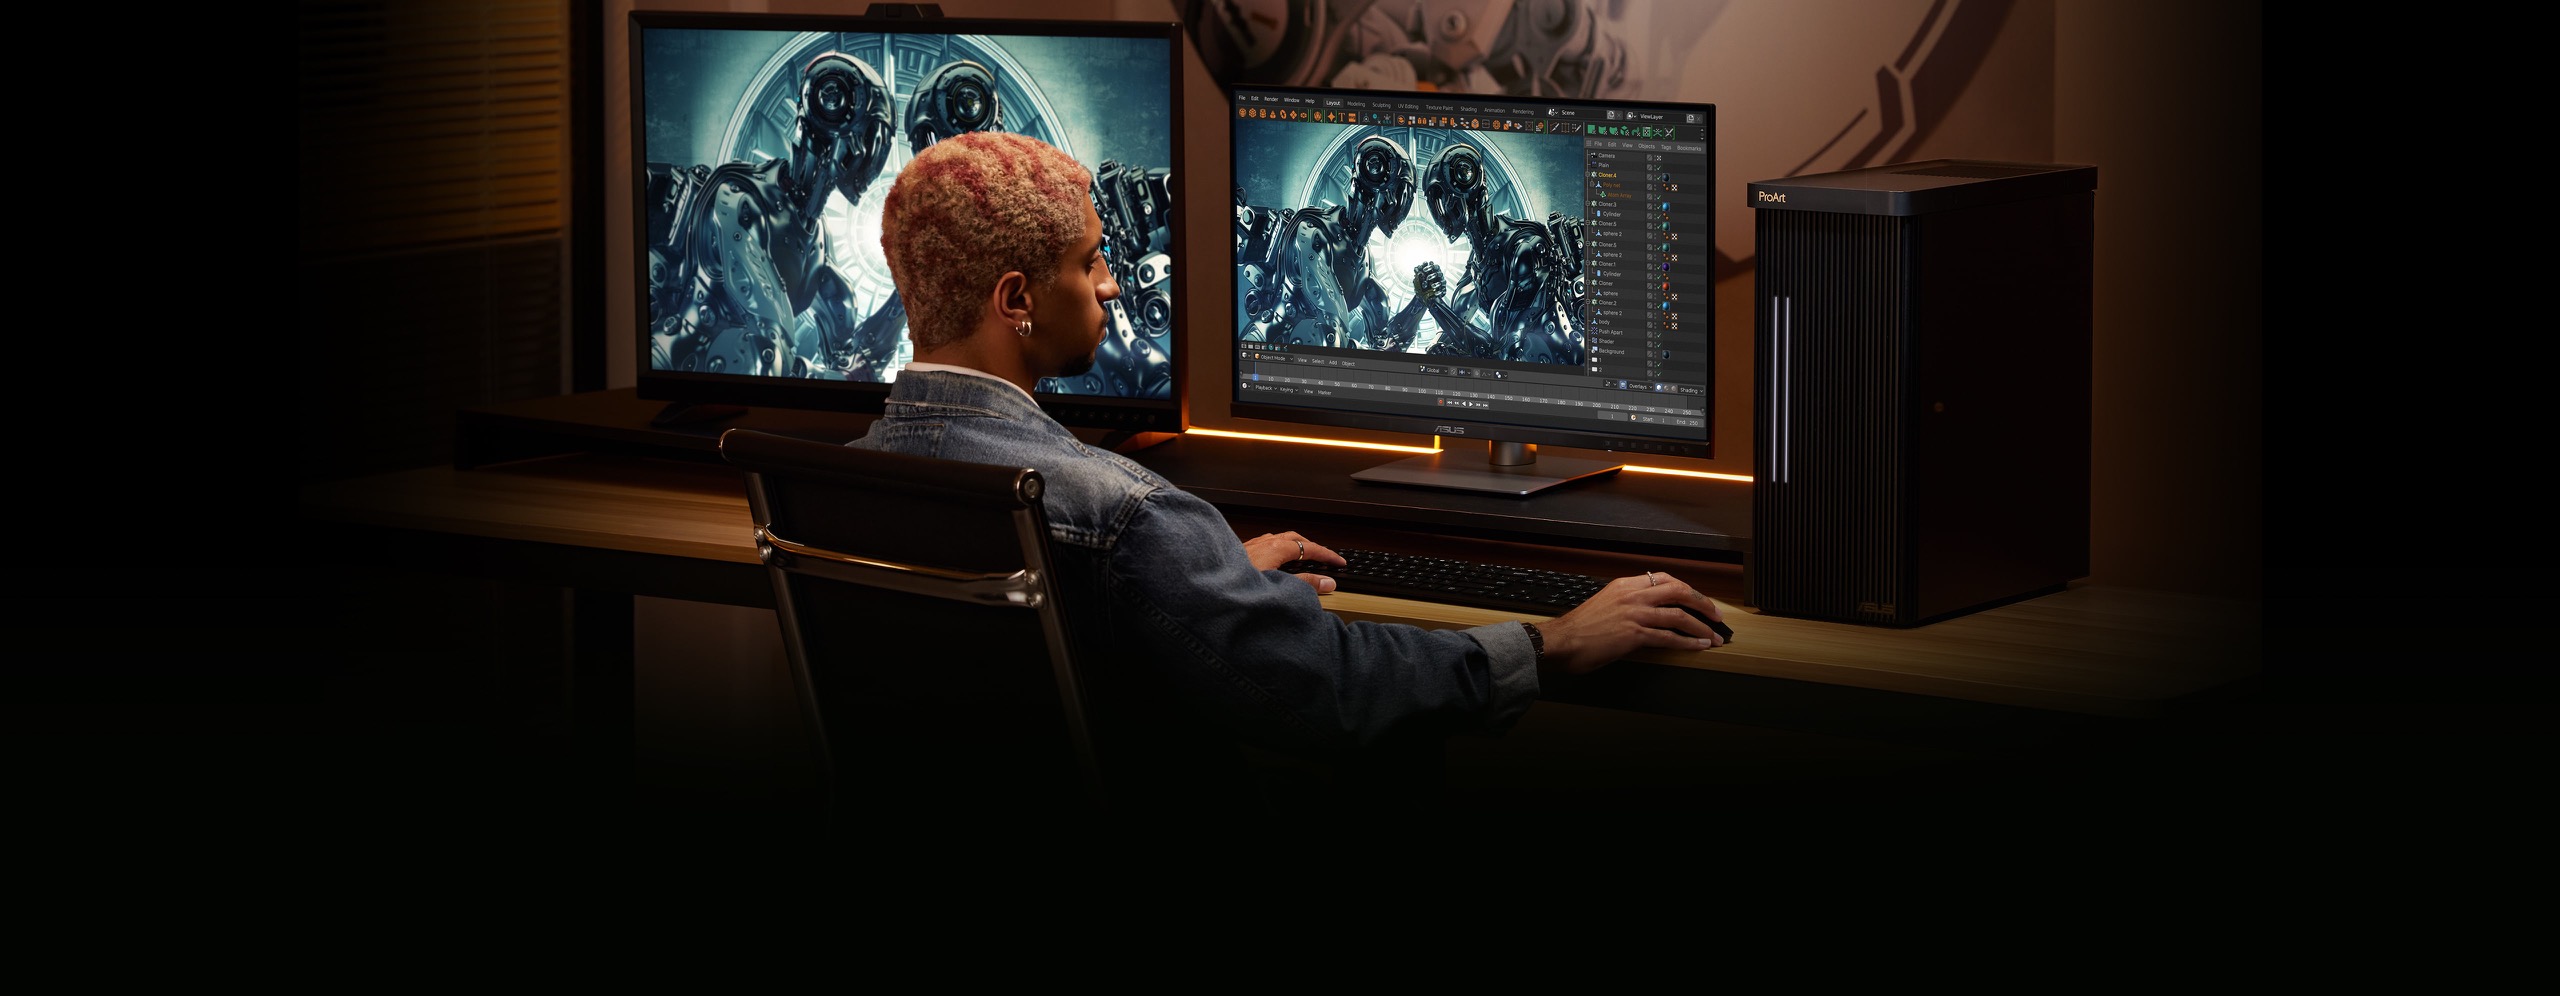 Muž sedící na židli, držící myš a píšící na klávesnici, s externím monitorem na levé straně a počítačem uprostřed a stanicí na pravé straně stolu. Na chodbě před stolem visí obraz.